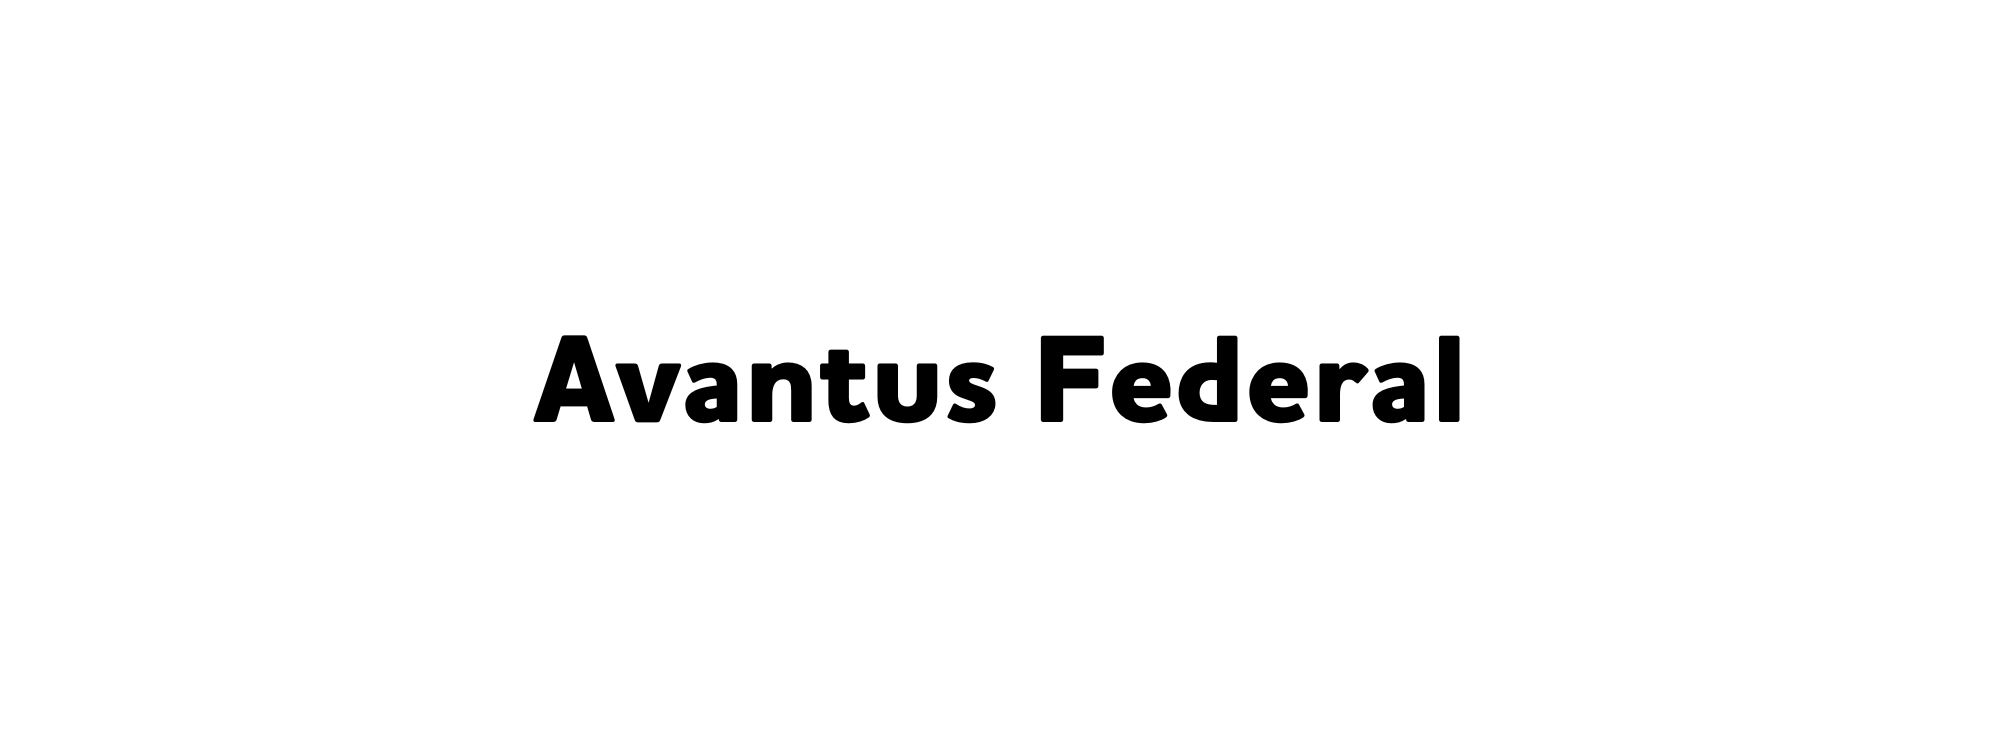 5a. Avantus Federal (Friend)